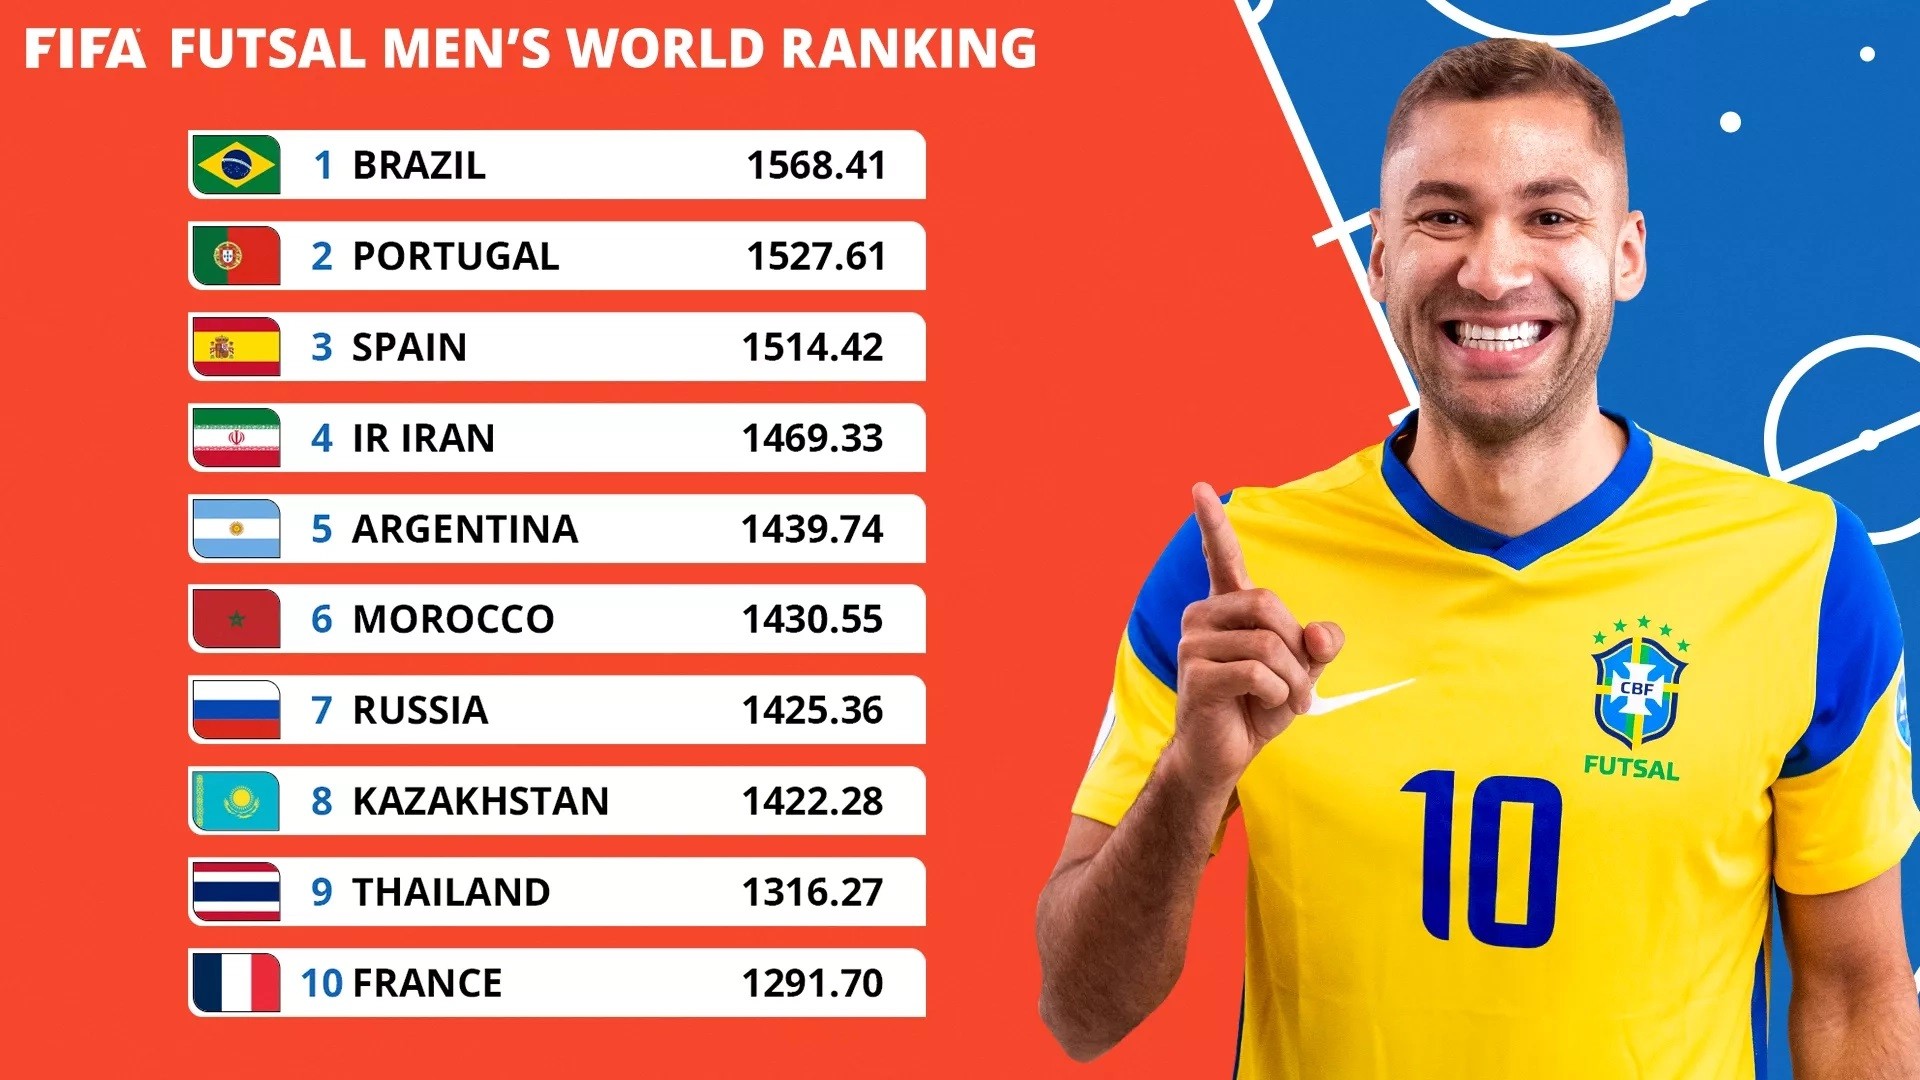 fifa-futsal-men-s-world-ranking-1715056437.jpg